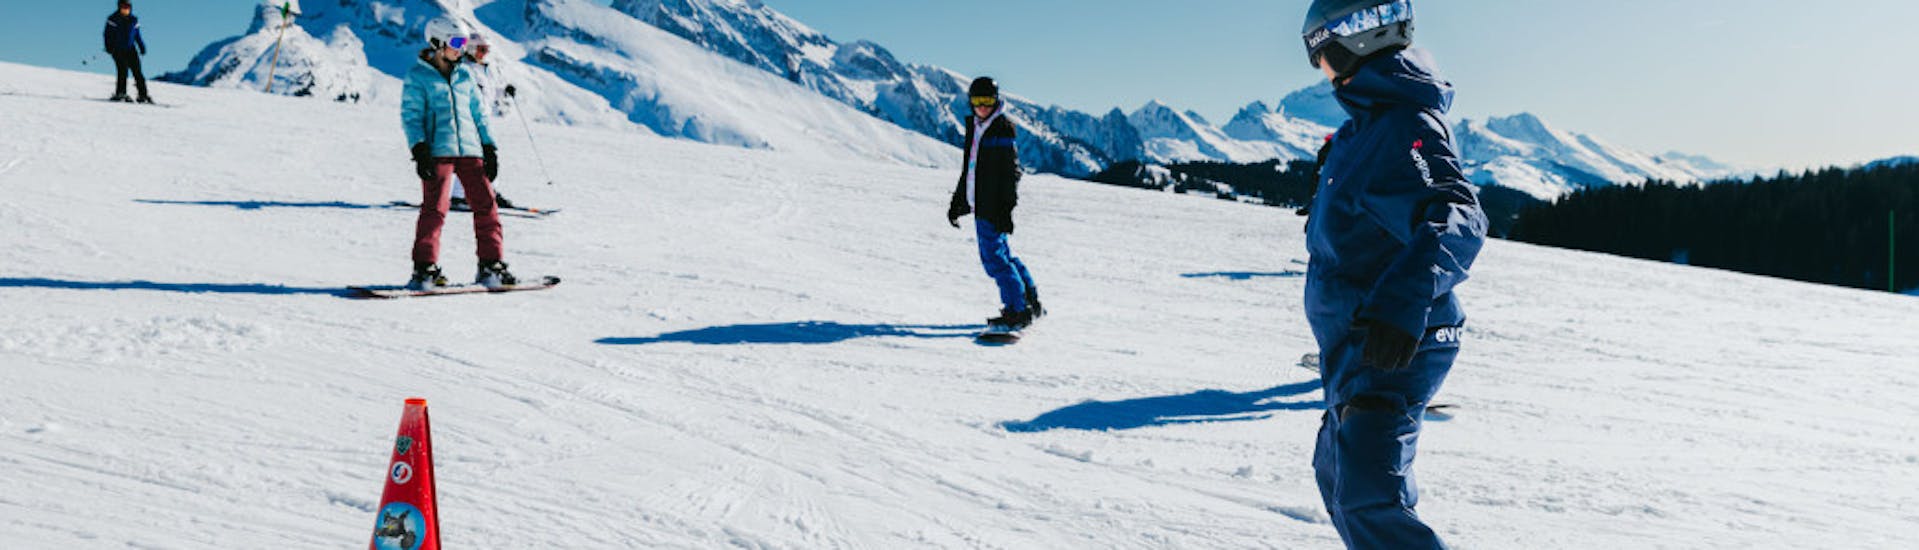 Lezioni di Snowboard a partire da 8 anni principianti assoluti con Evolution 2 Saint-Gervais.